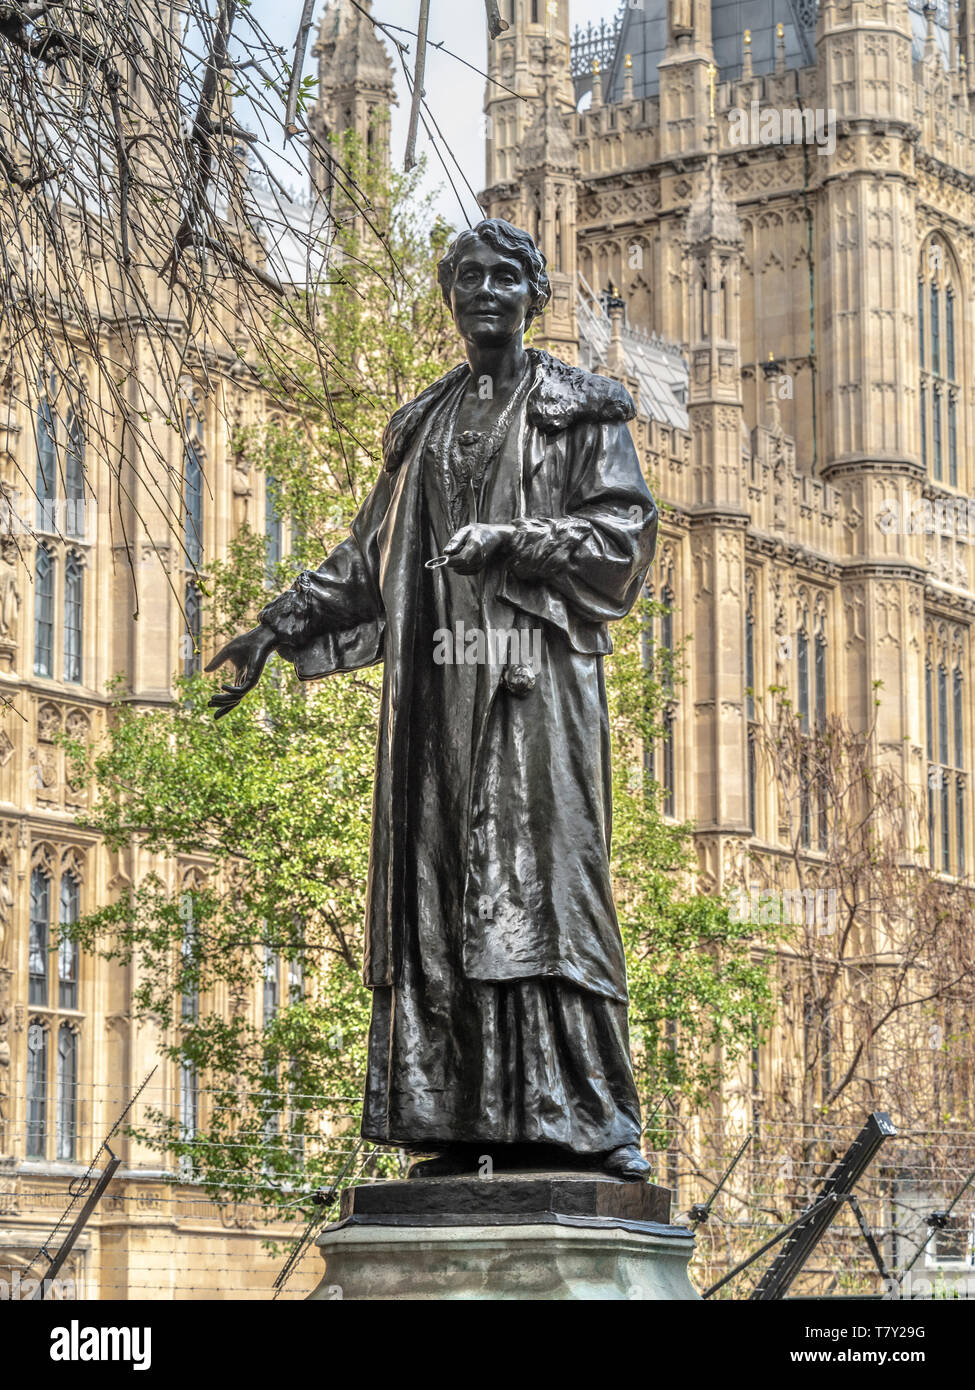 Statue en bronze d'Emmeline Pankhurst par Arthur George Walker située dans les jardins de la tour Victoria, Westminster, Londres, Royaume-Uni. Dévoilé en 1930. Banque D'Images